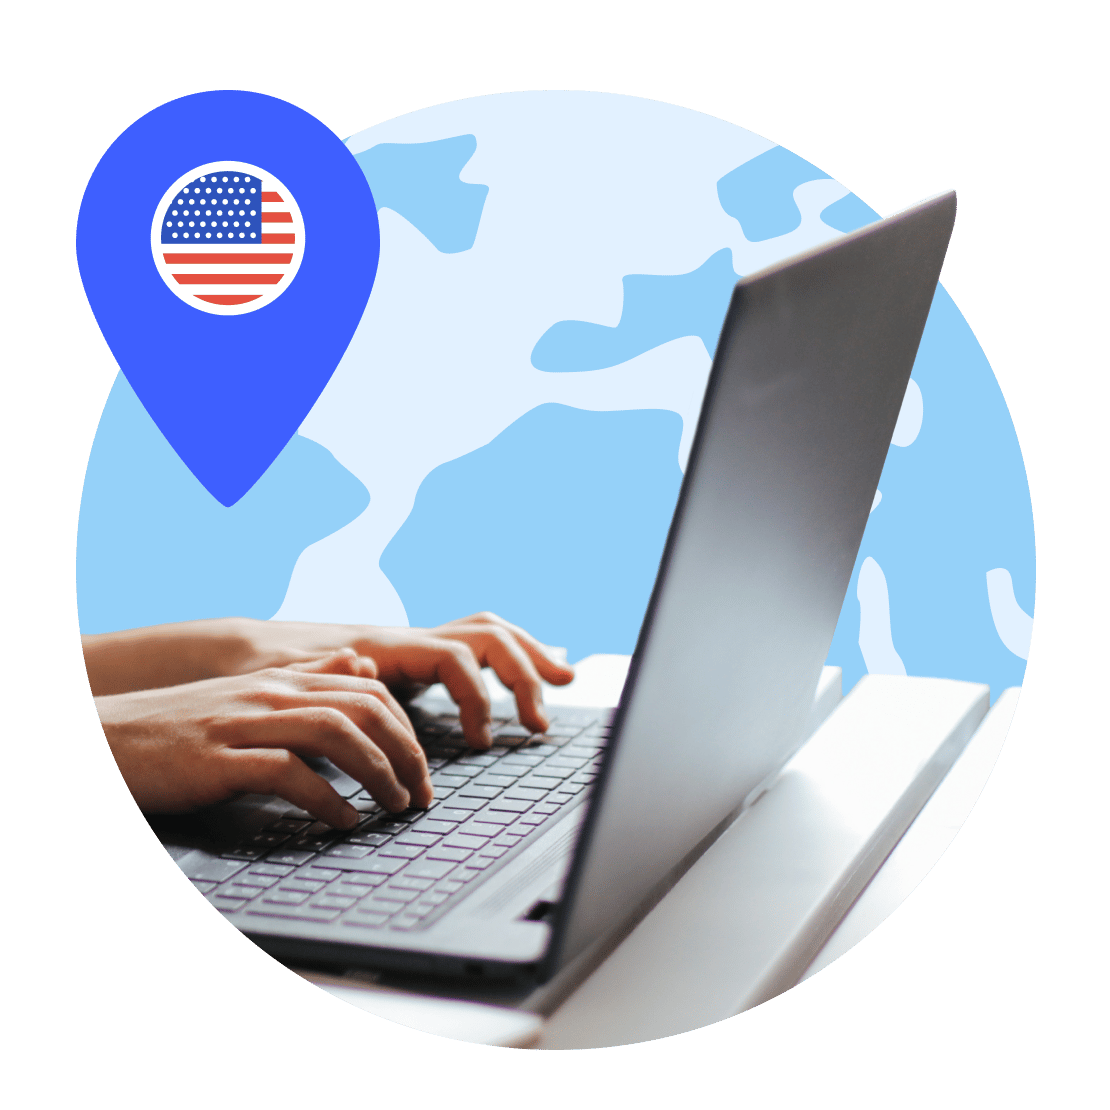 En person opretter forbindelse til en amerikansk VPN-server for at sikre sin enhed.